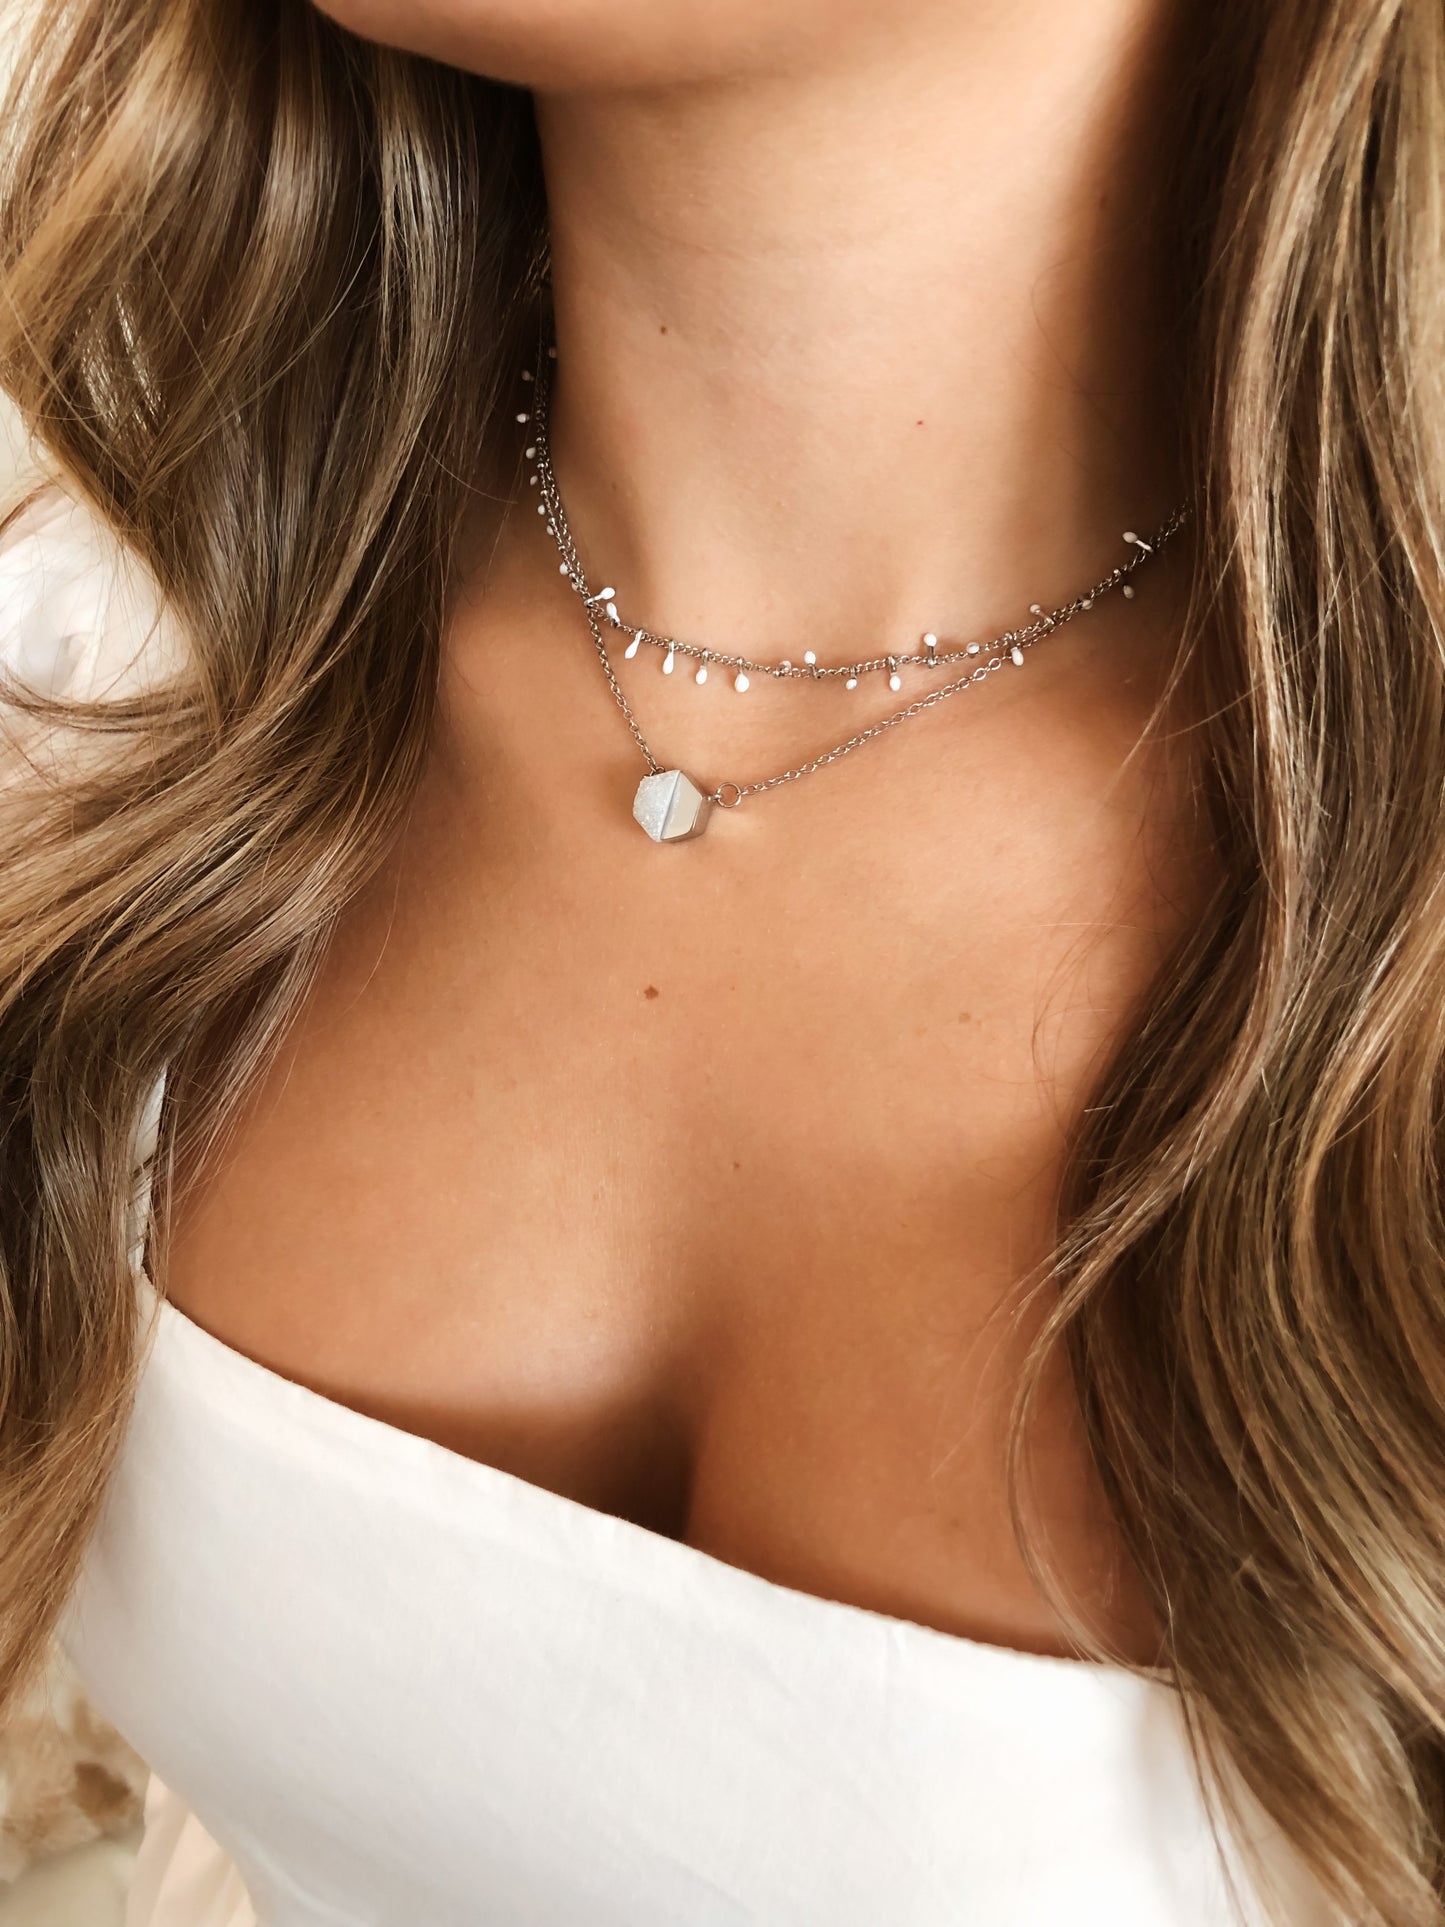 Goddess Collection - Silver Ashen Dallap Necklace